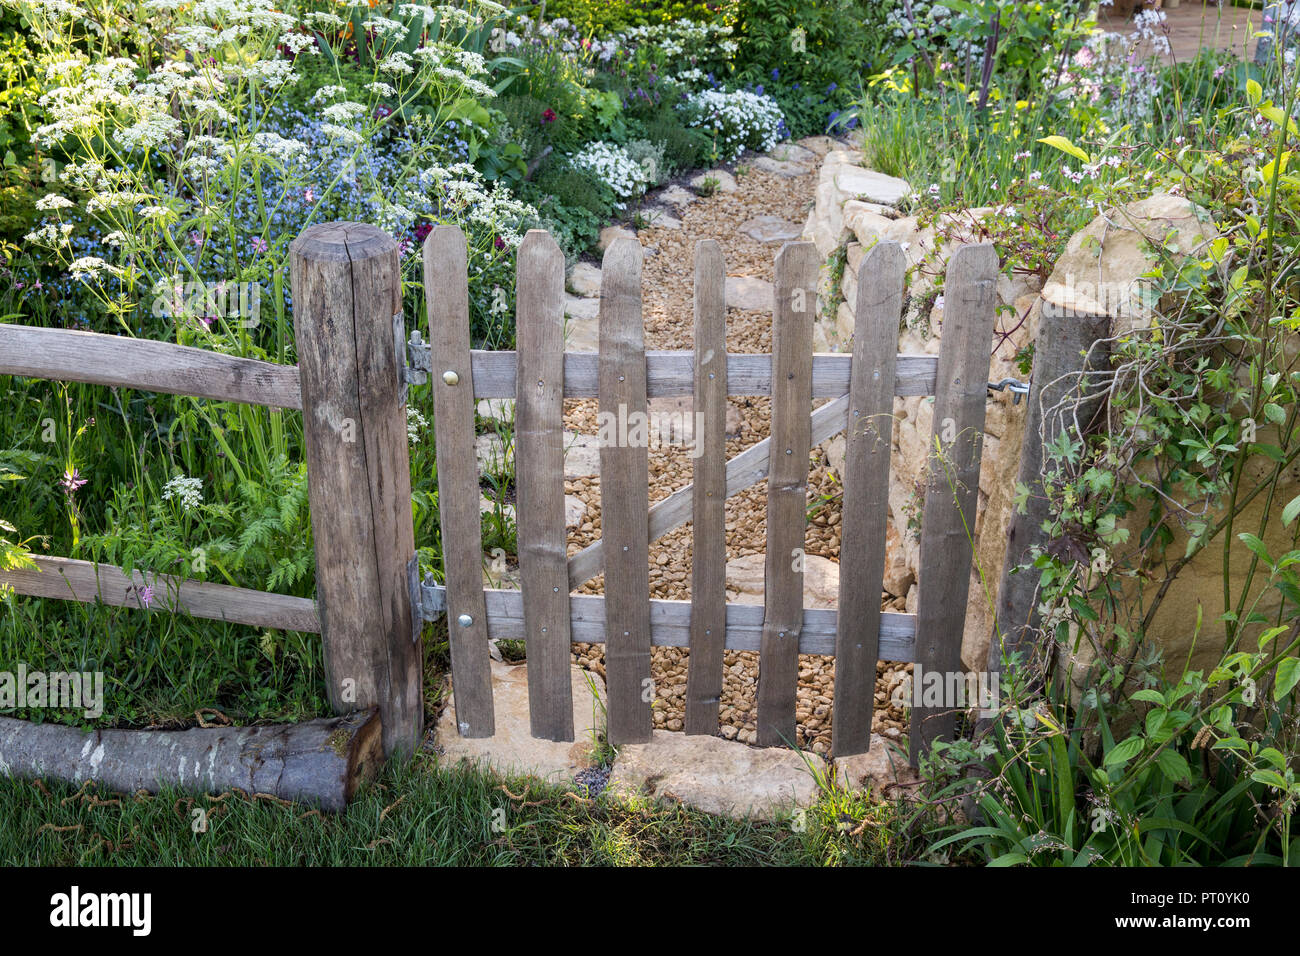 Rustico vecchio picchetto di legno recinto giardino fiori di campo cottage stile giardino piantare sentiero di ghiaia Cotswold muro di pietra a secco primavera estate Regno Unito Foto Stock